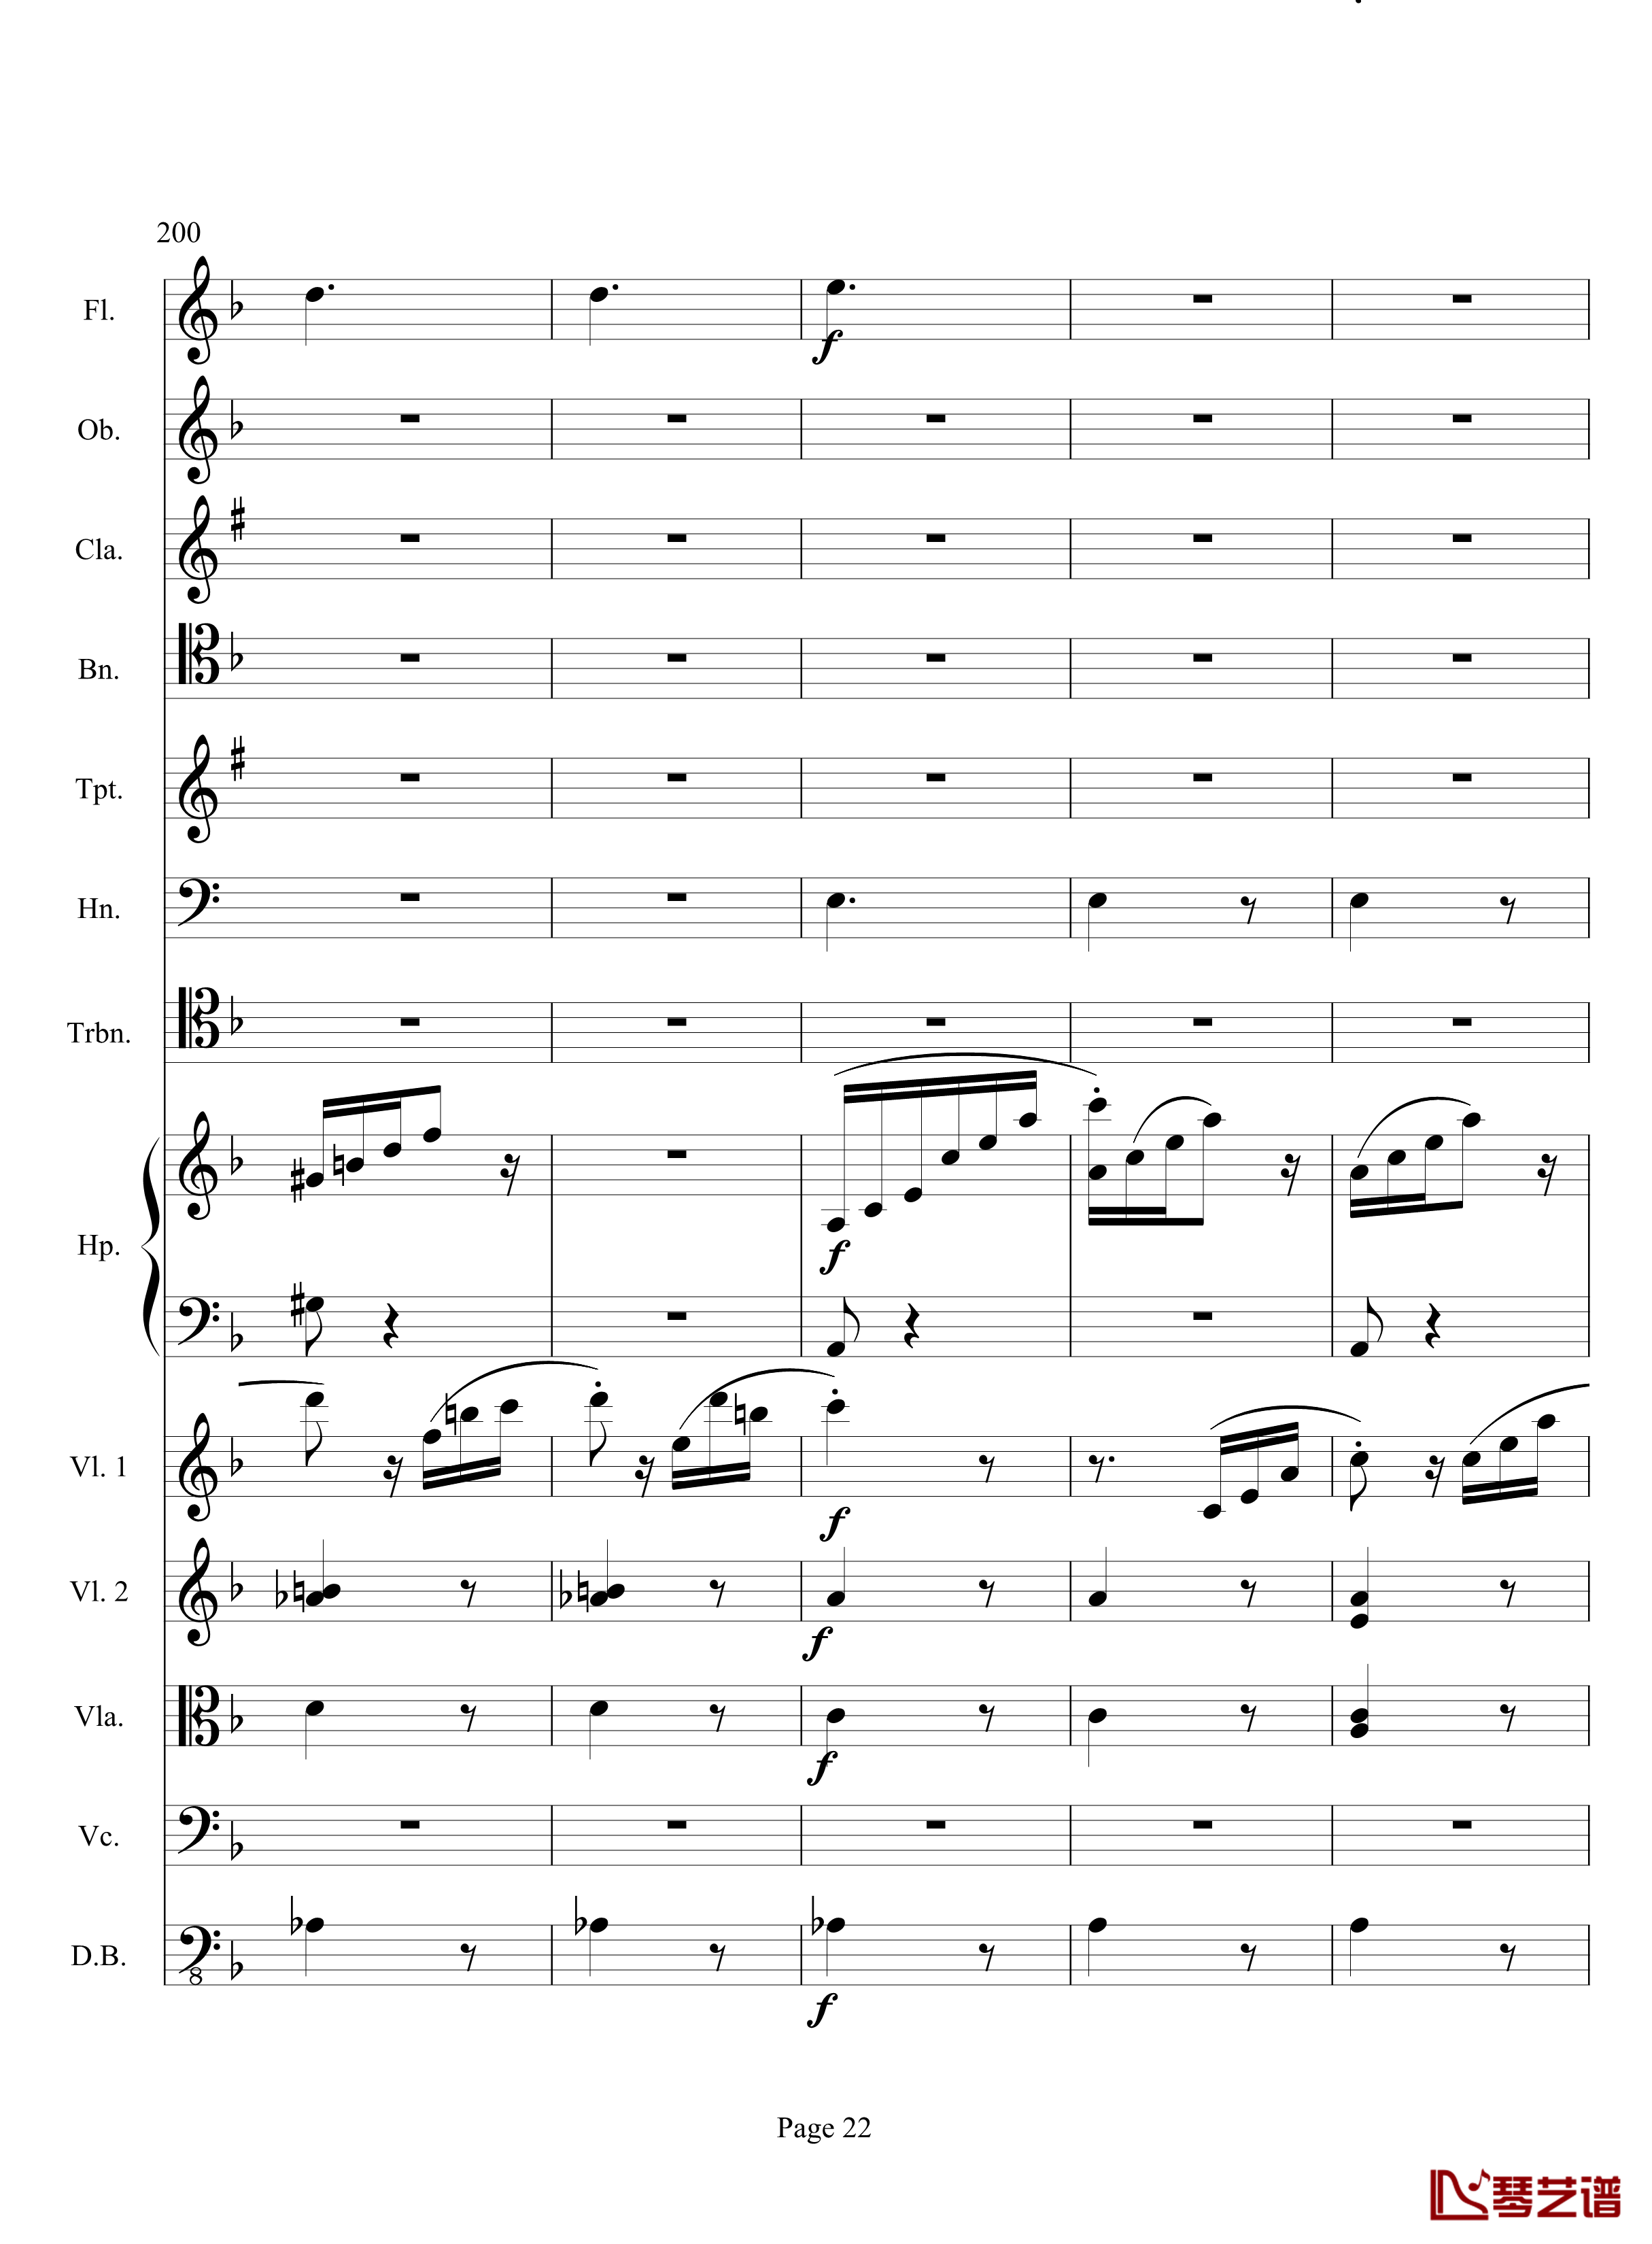 奏鸣曲之交响钢琴谱-第17首-Ⅲ-贝多芬-beethoven22